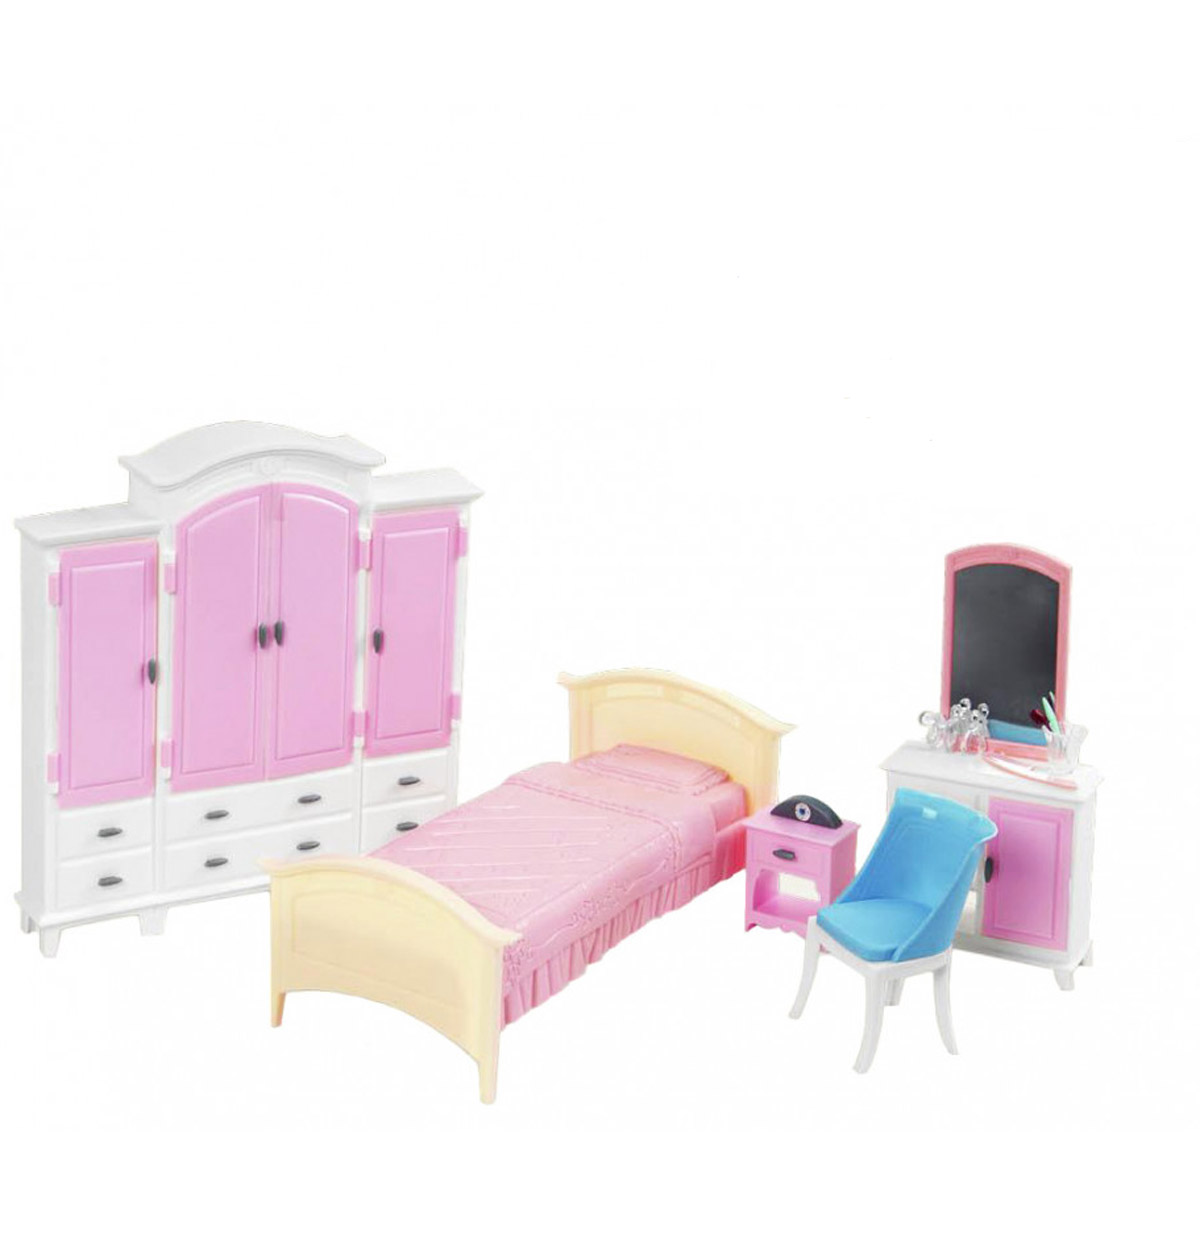 Іграшкові меблі 'Спальня з гардеробом'